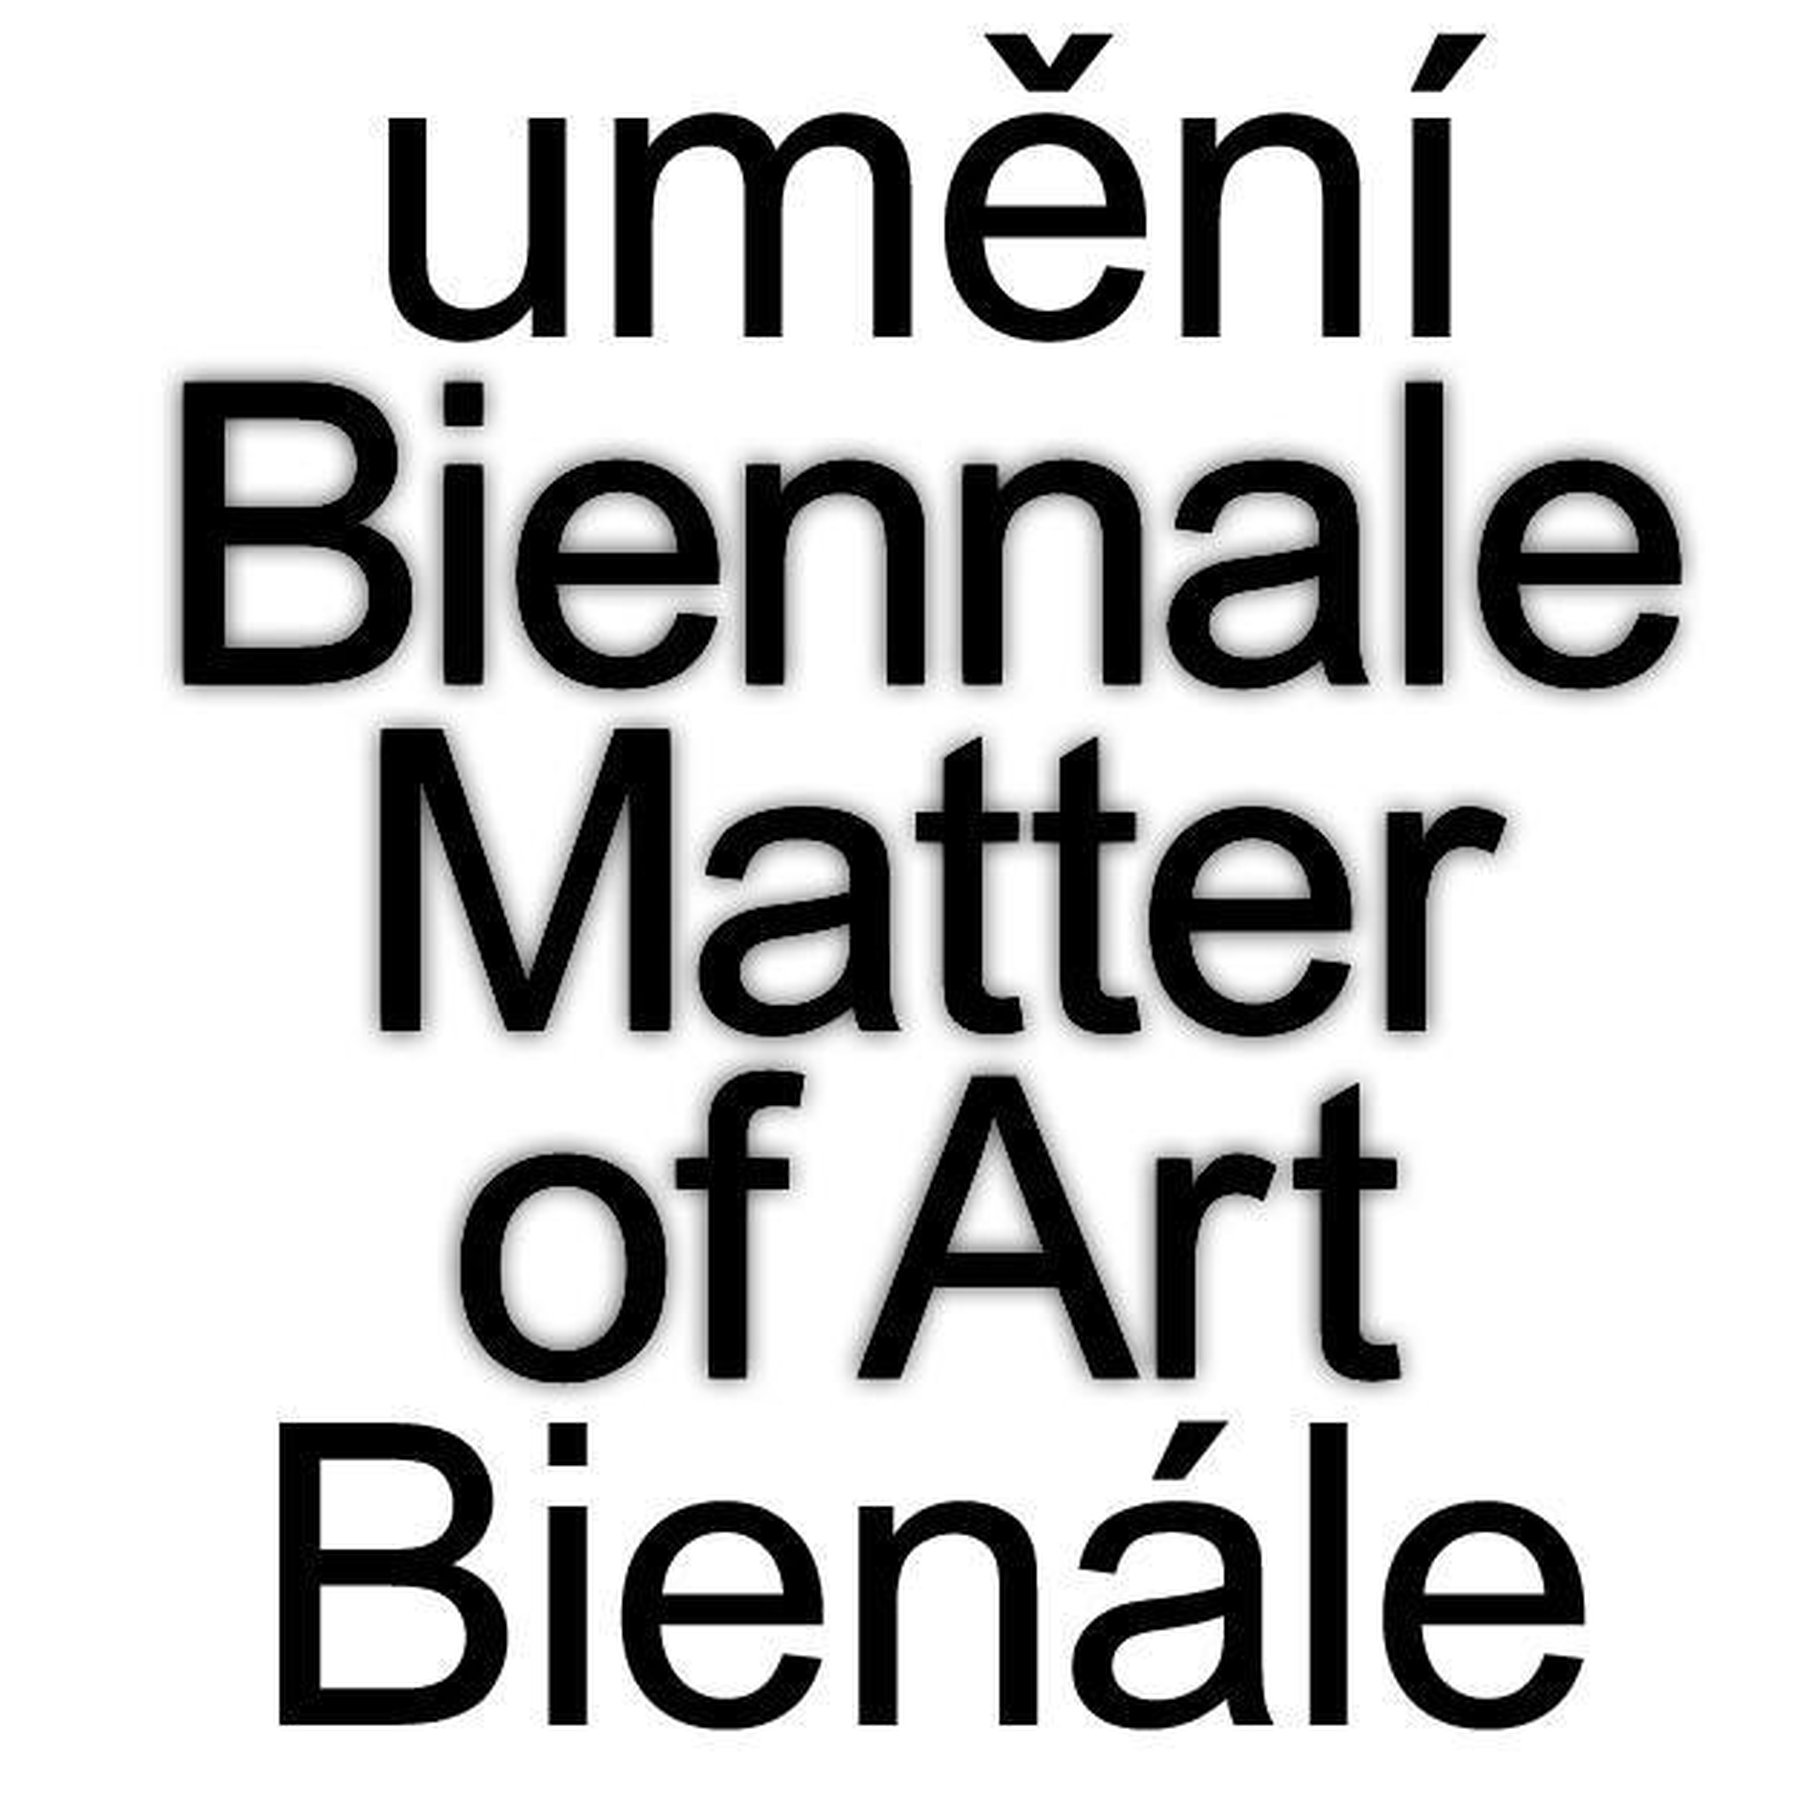 Biennale Matter of Art